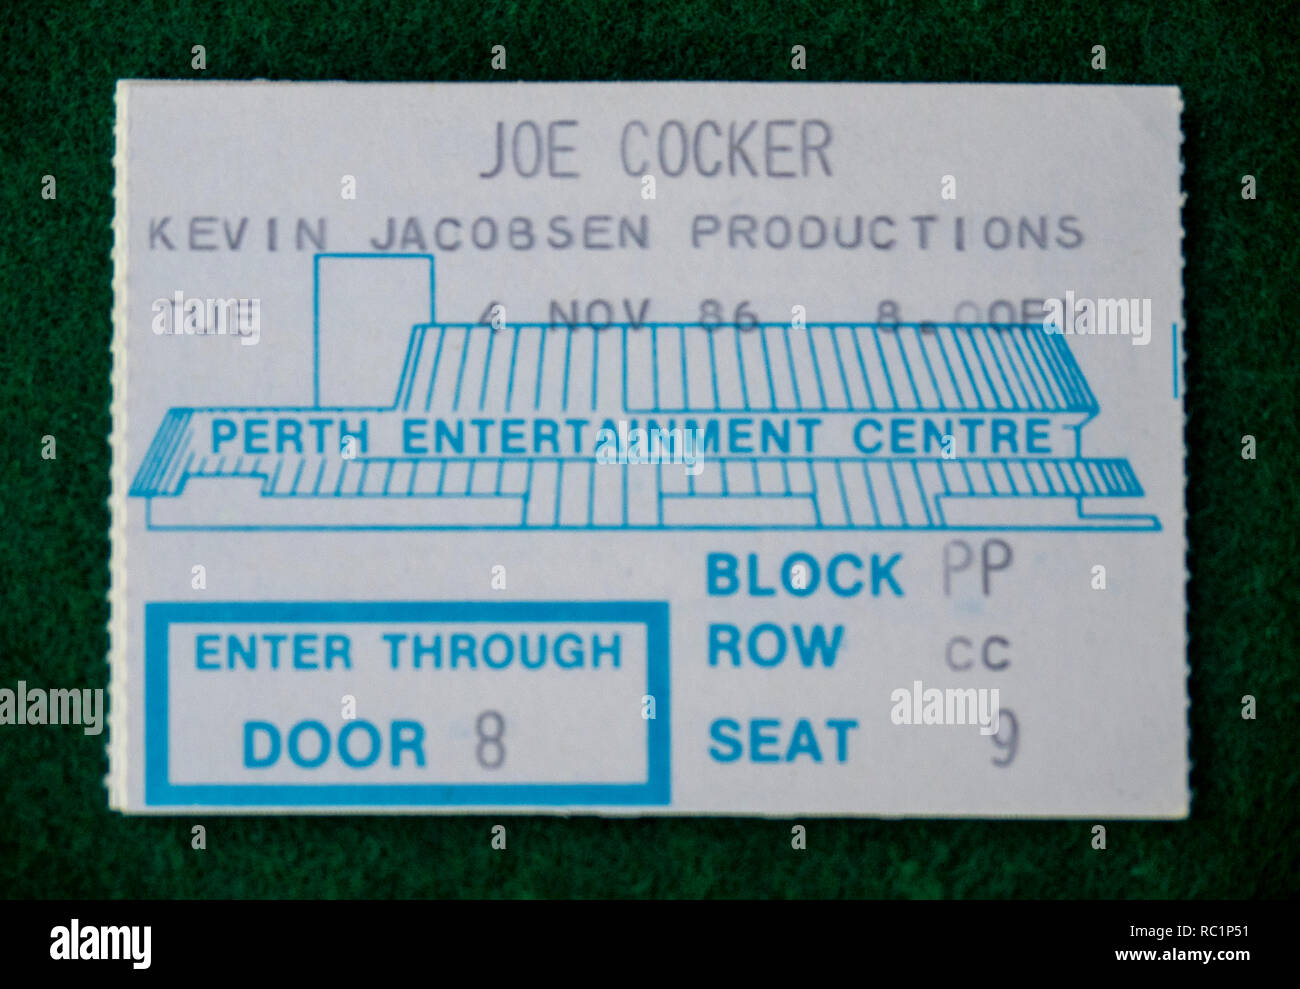 Ticket for Joe Cocker concert at Perth Entertainment Centre in 1986 WA Australia. Stock Photo